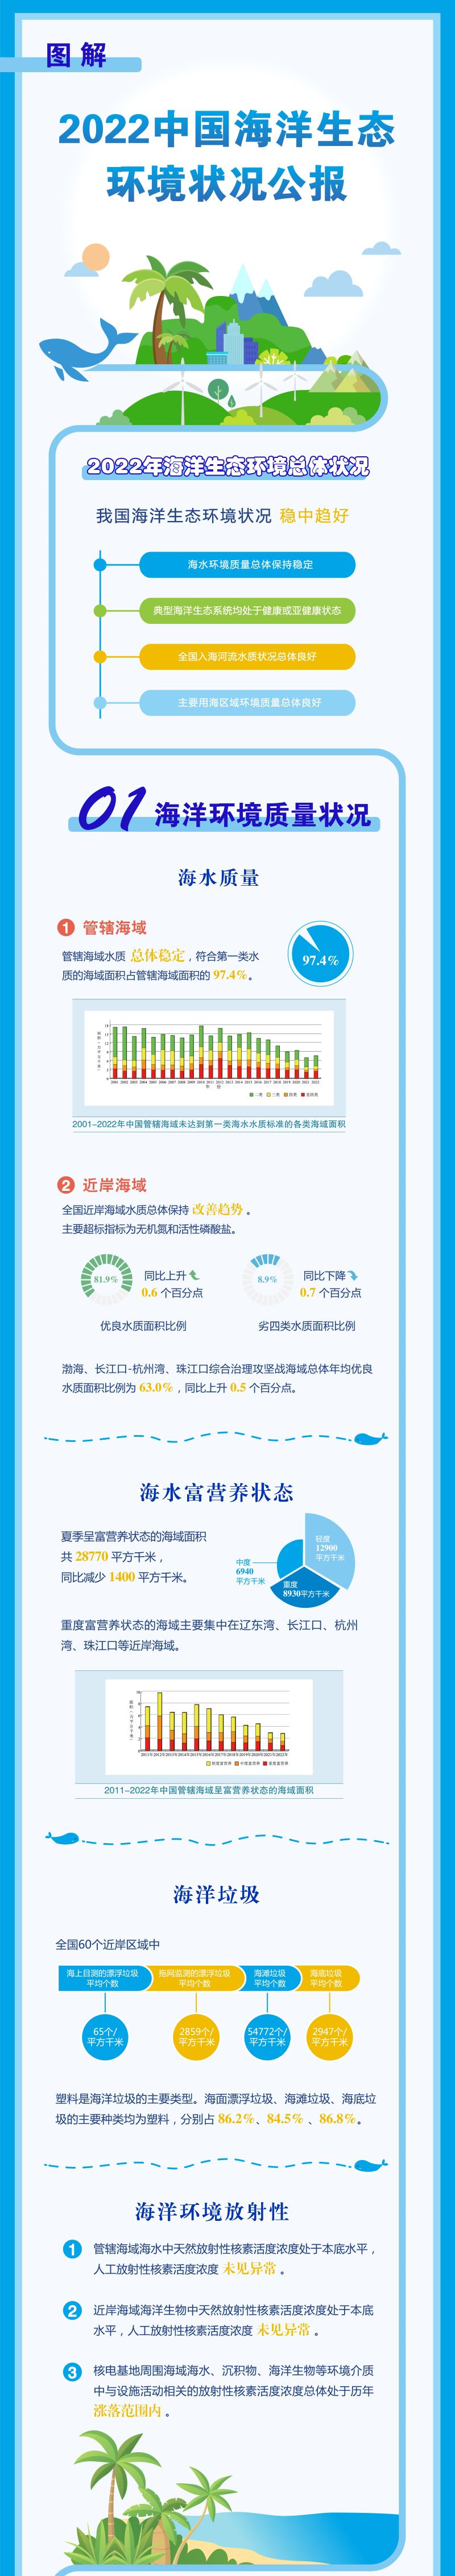 【图解】2022中国海洋生态环境状况公报